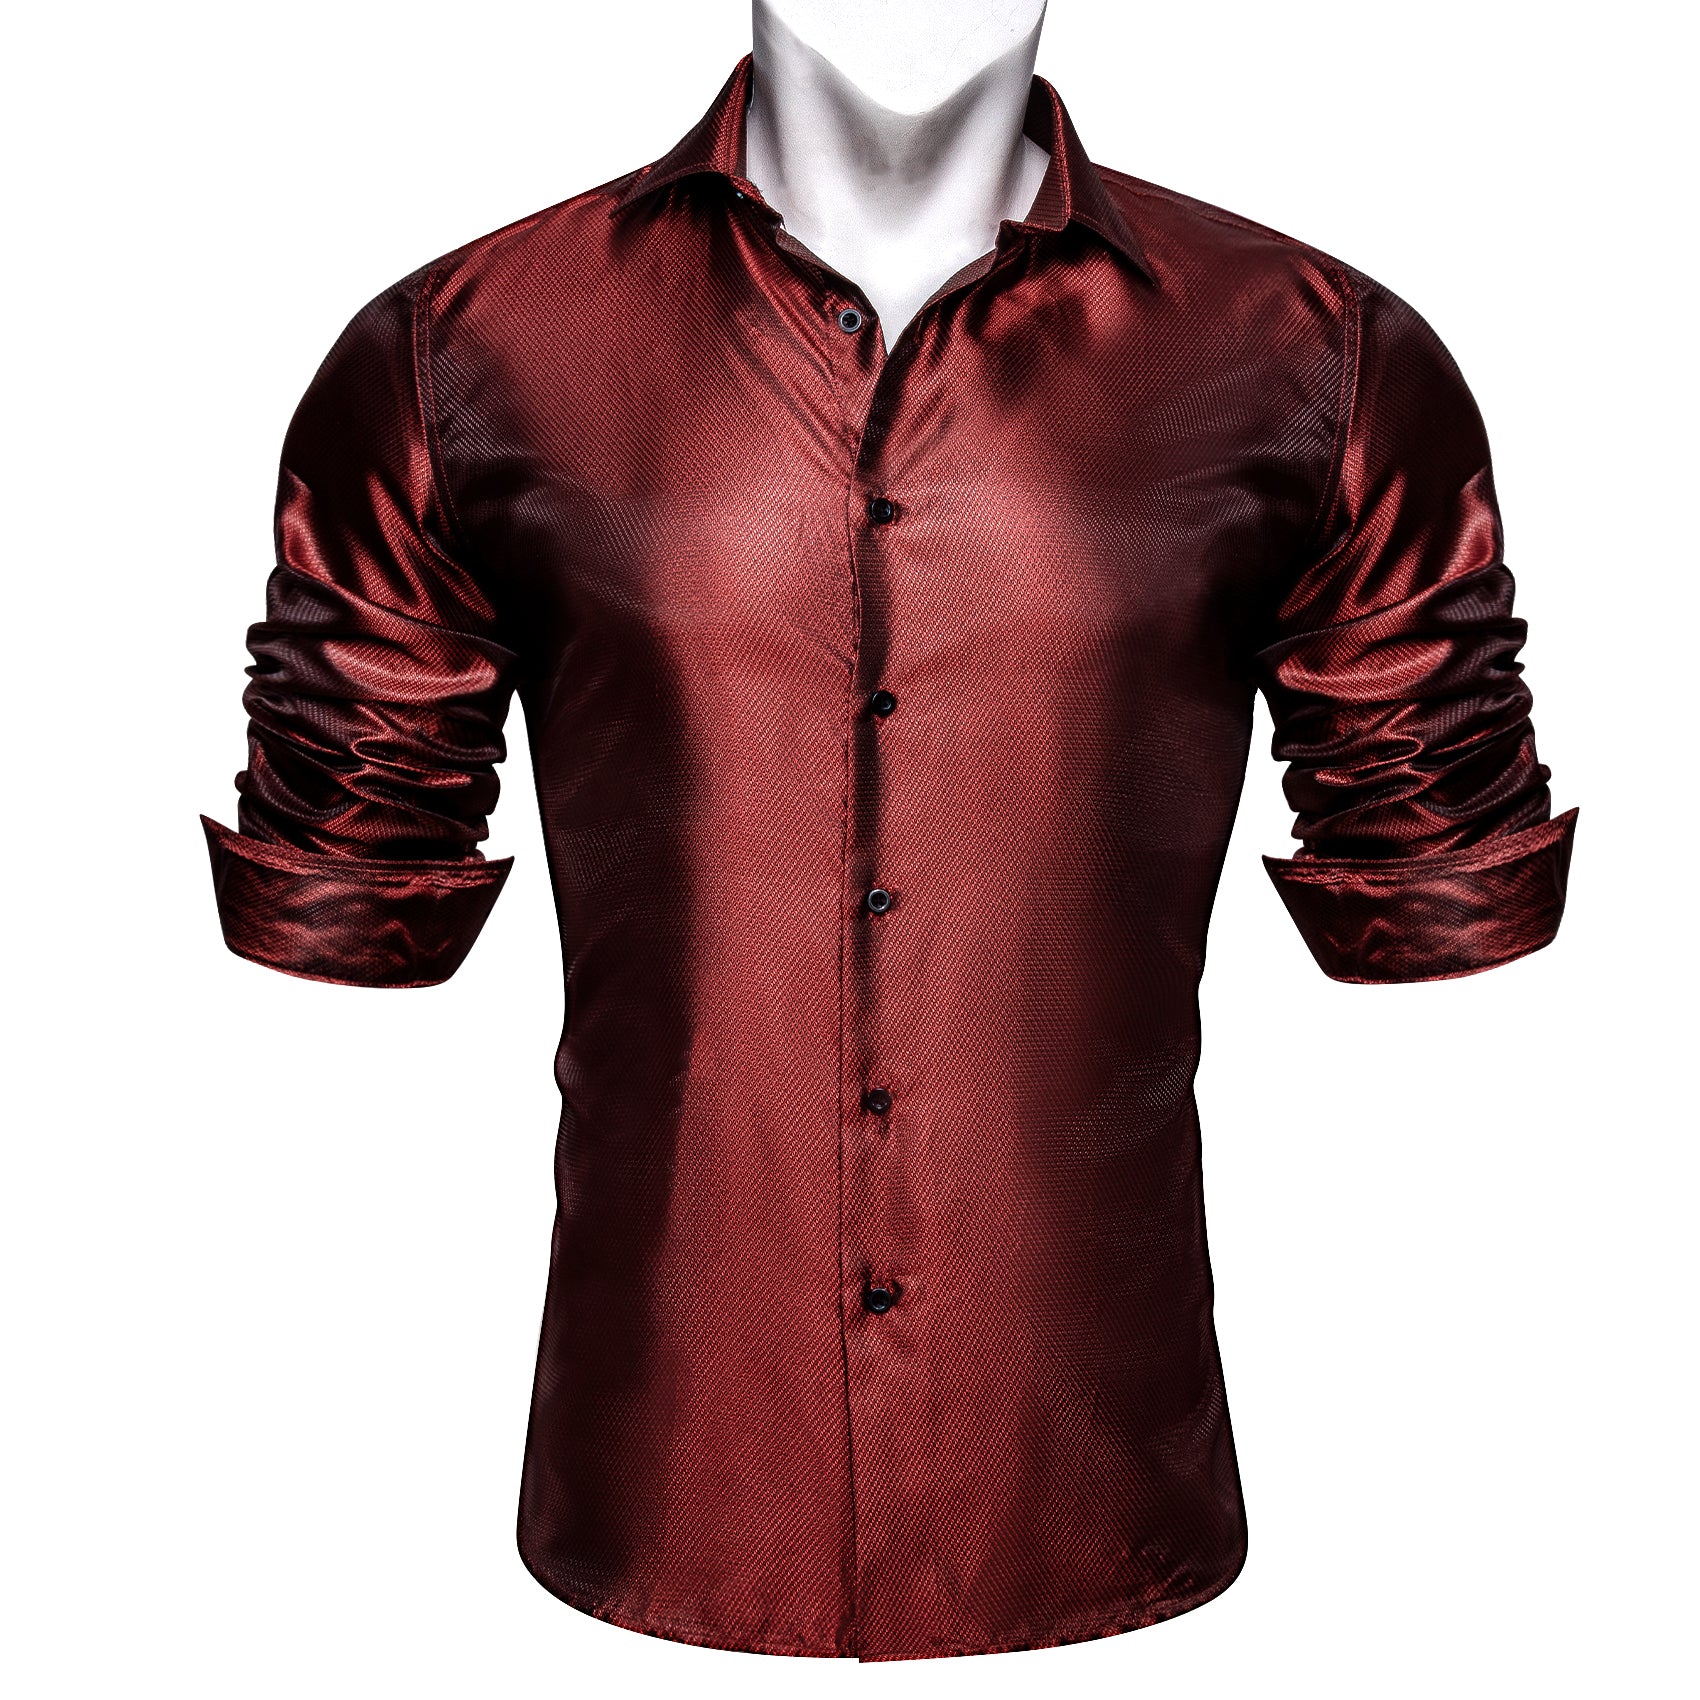 Barry.wang Button Down Shirt Rust Red Solid Silk Long Sleeve Shirt